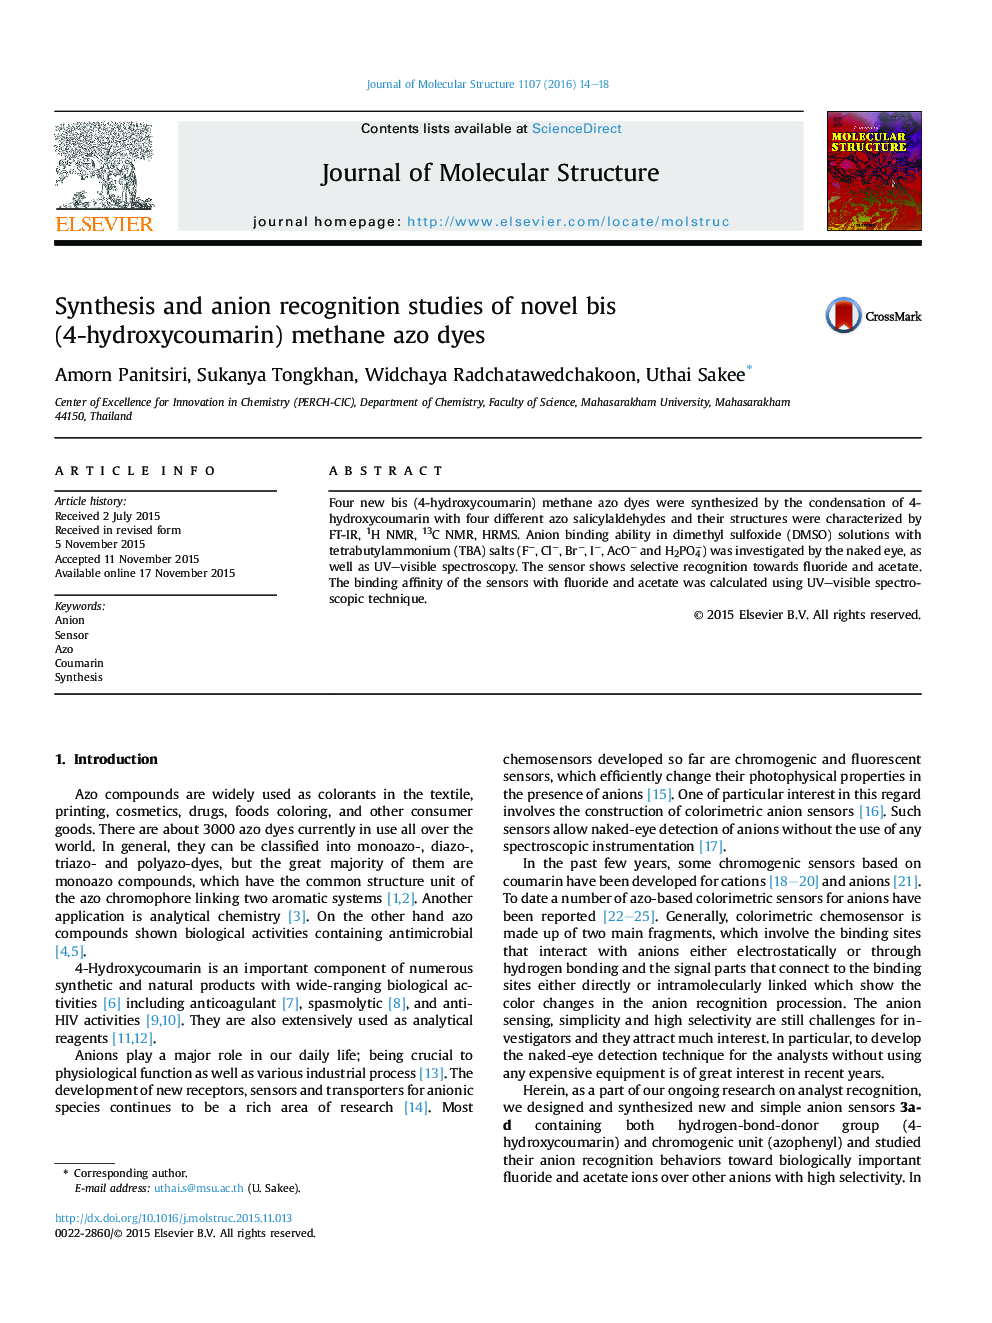 سنتز و مطالعات تشخیص آنیون جدید رنگ ایزو متان bis (4-hydroxycoumarin) 